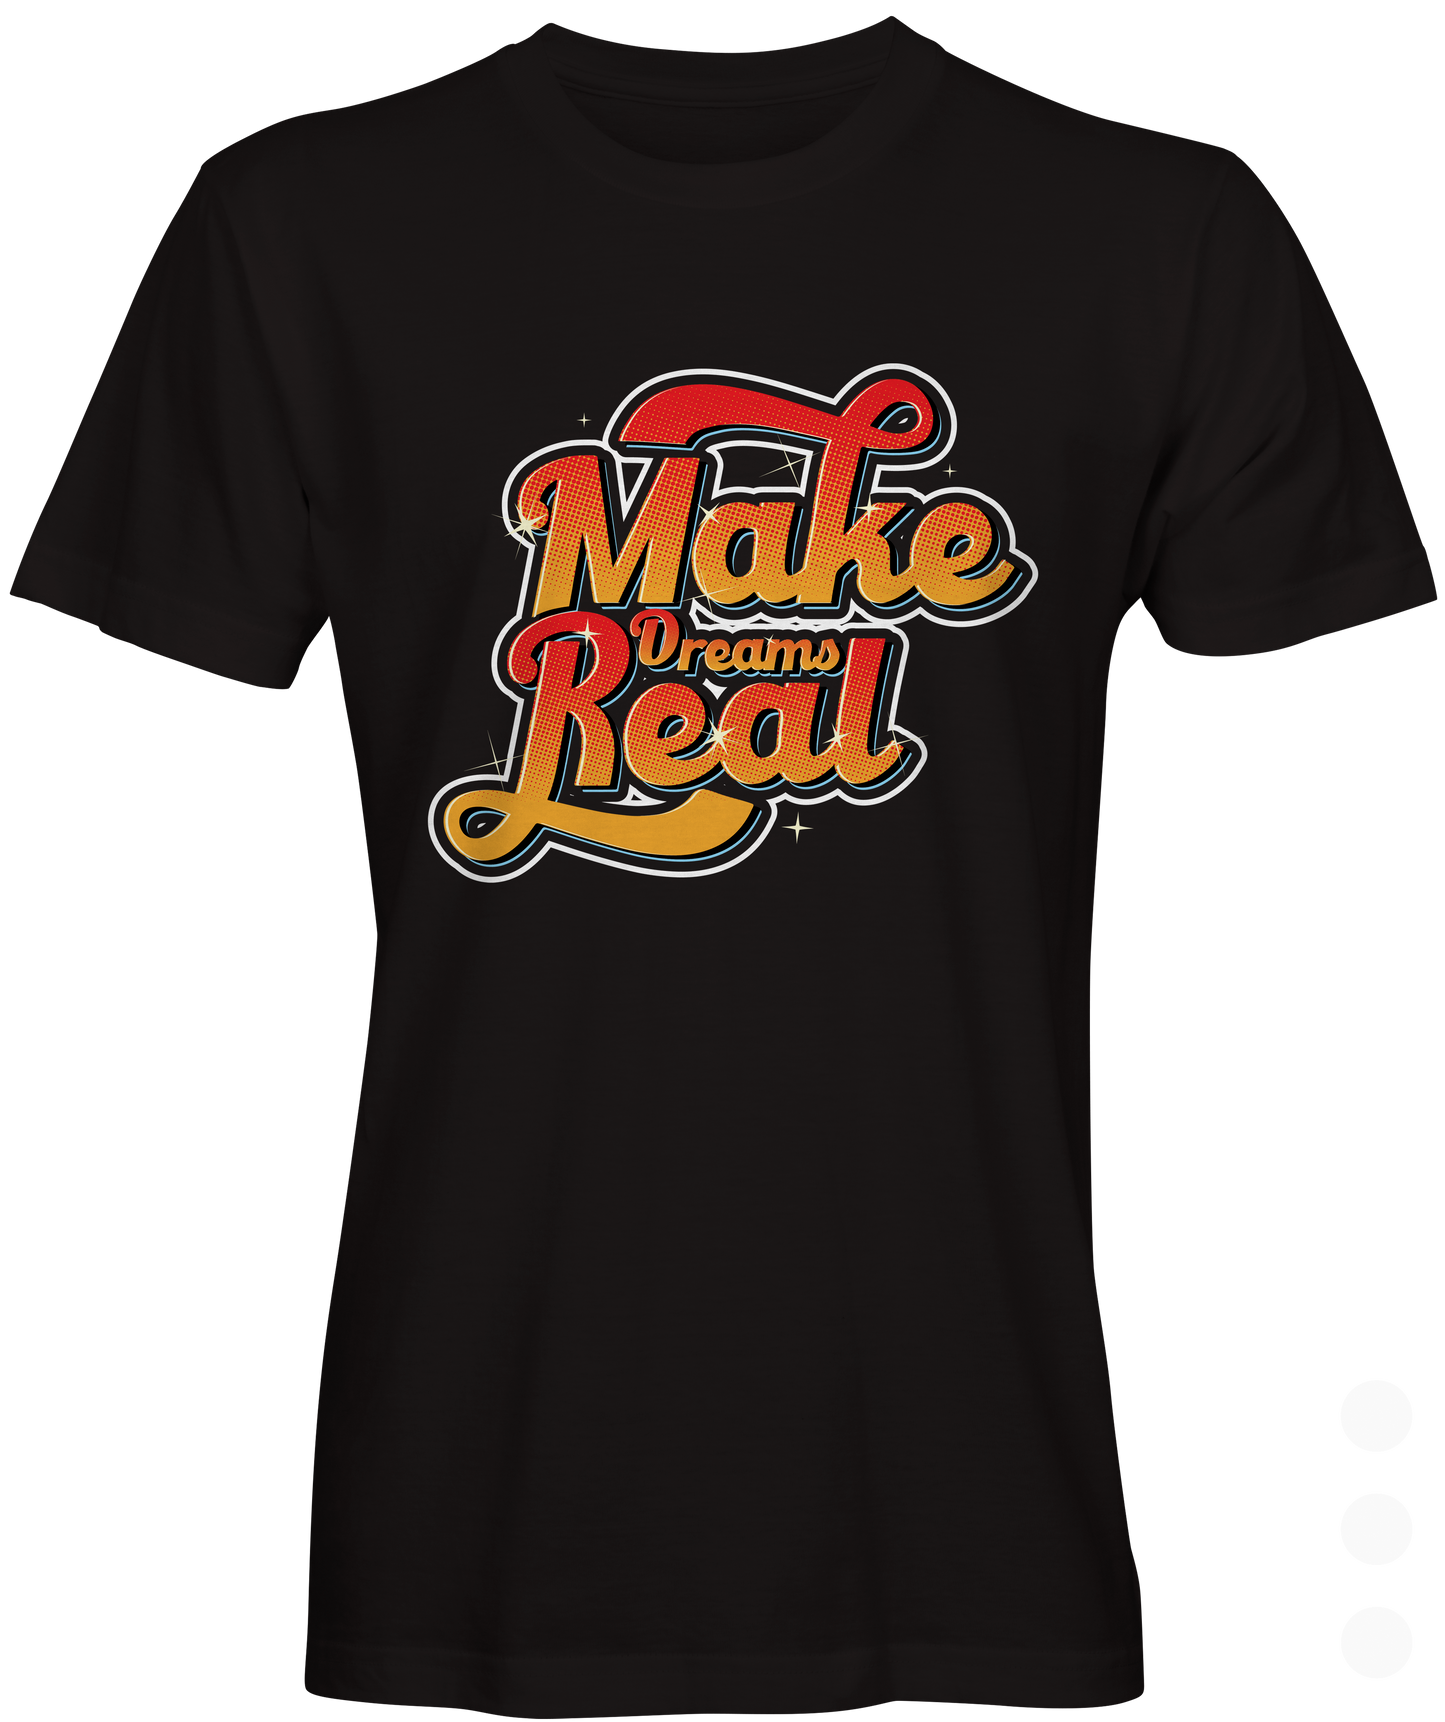 Make Dreams Real Graphic T-shirt